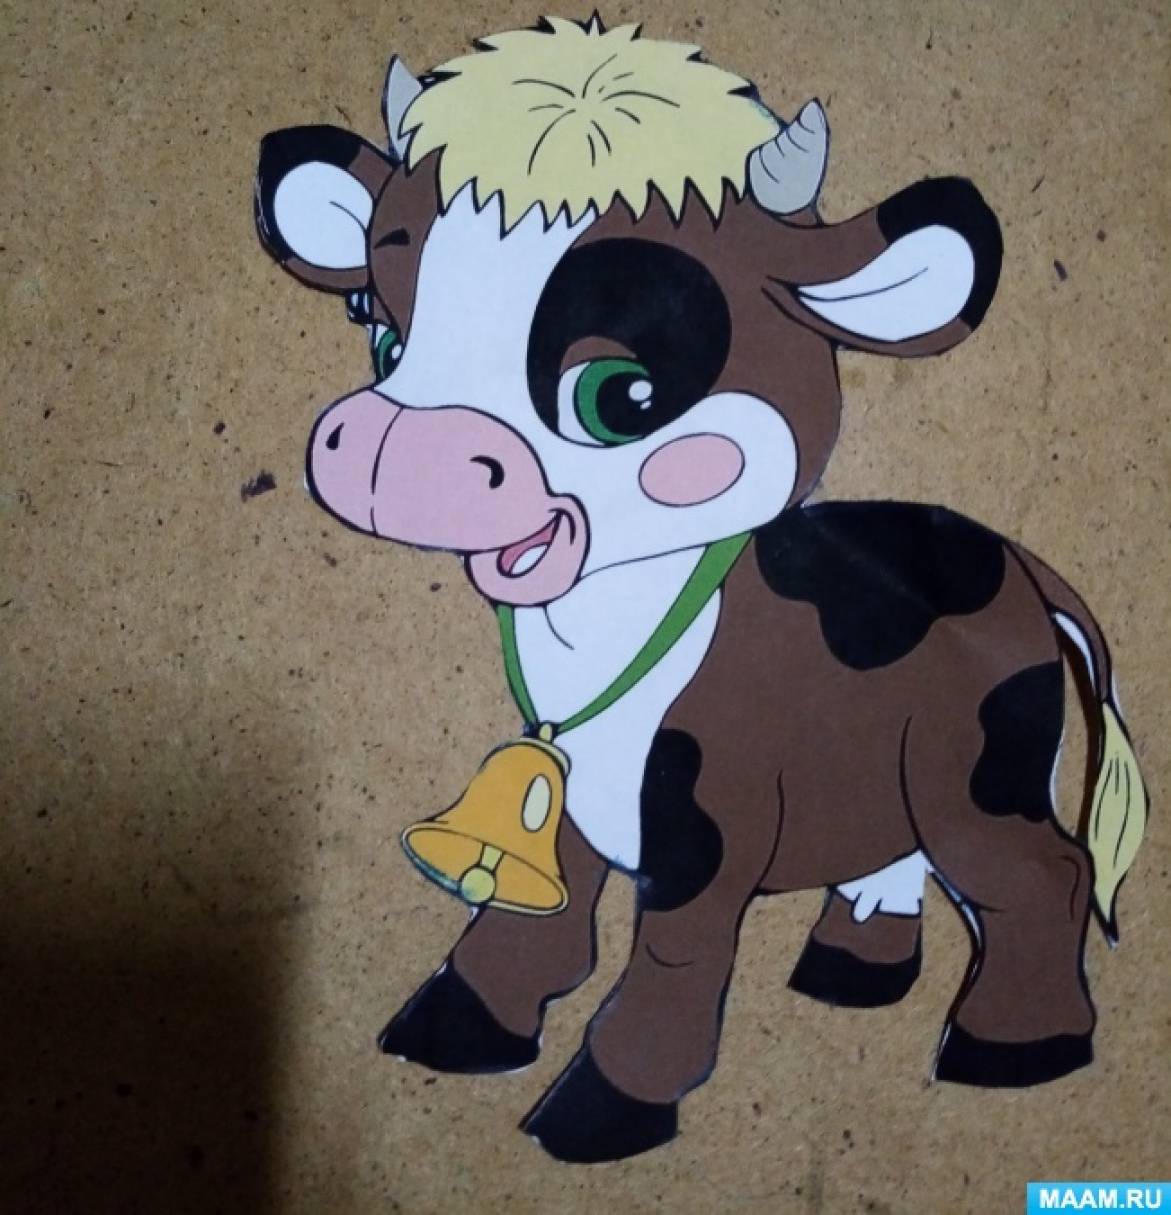 Поделка «Корова» своими руками для детского сада пошагово с фото